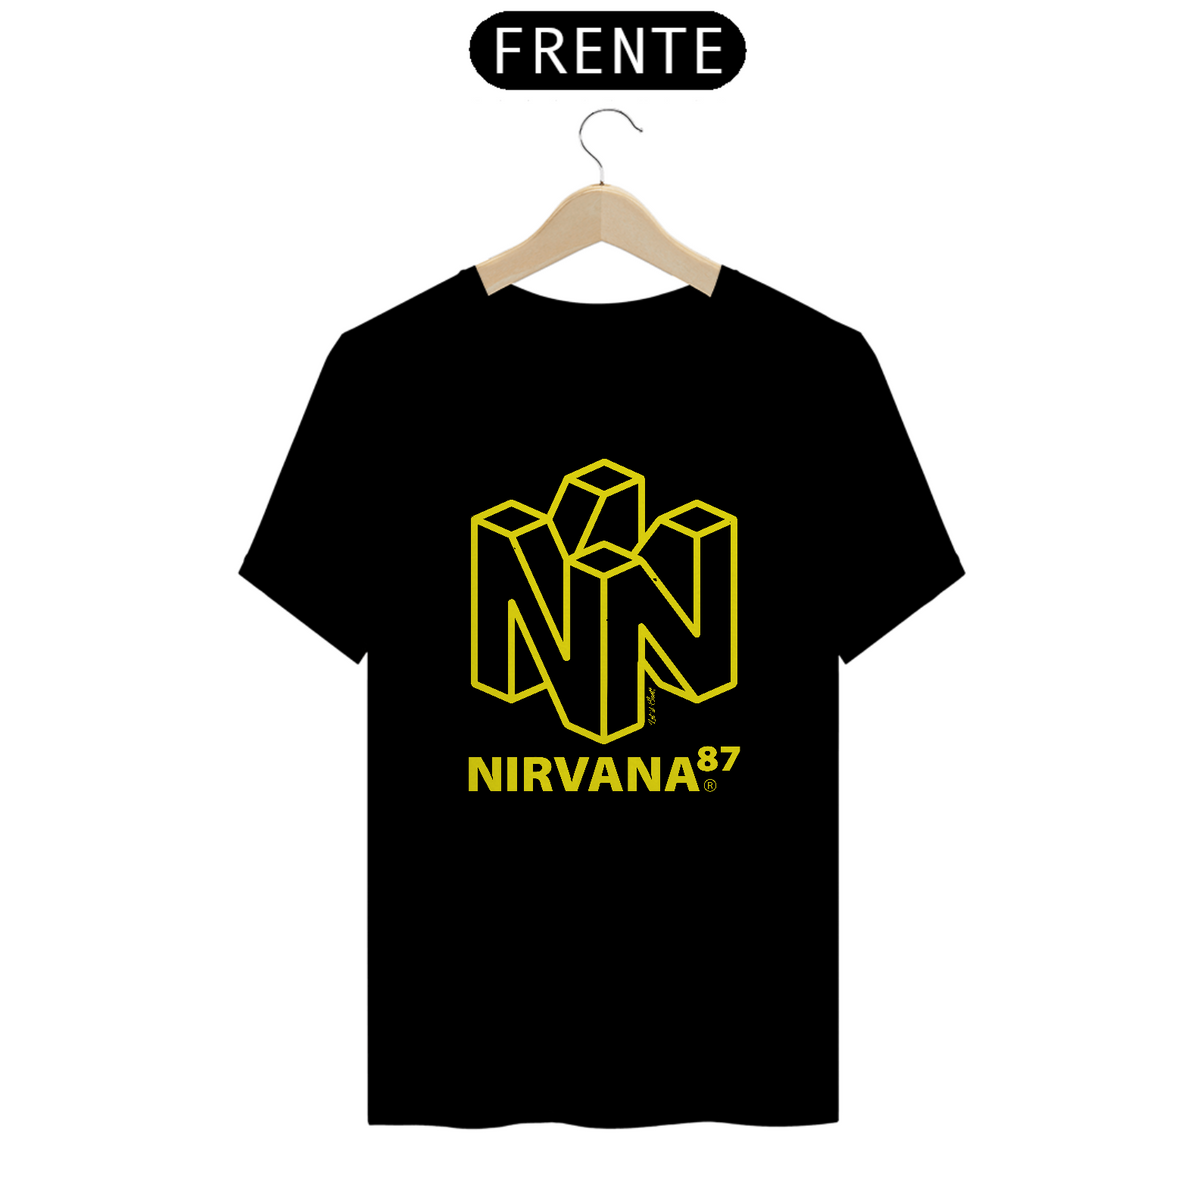 Nome do produto: T-SHIRT NIRVANA & NITENDO